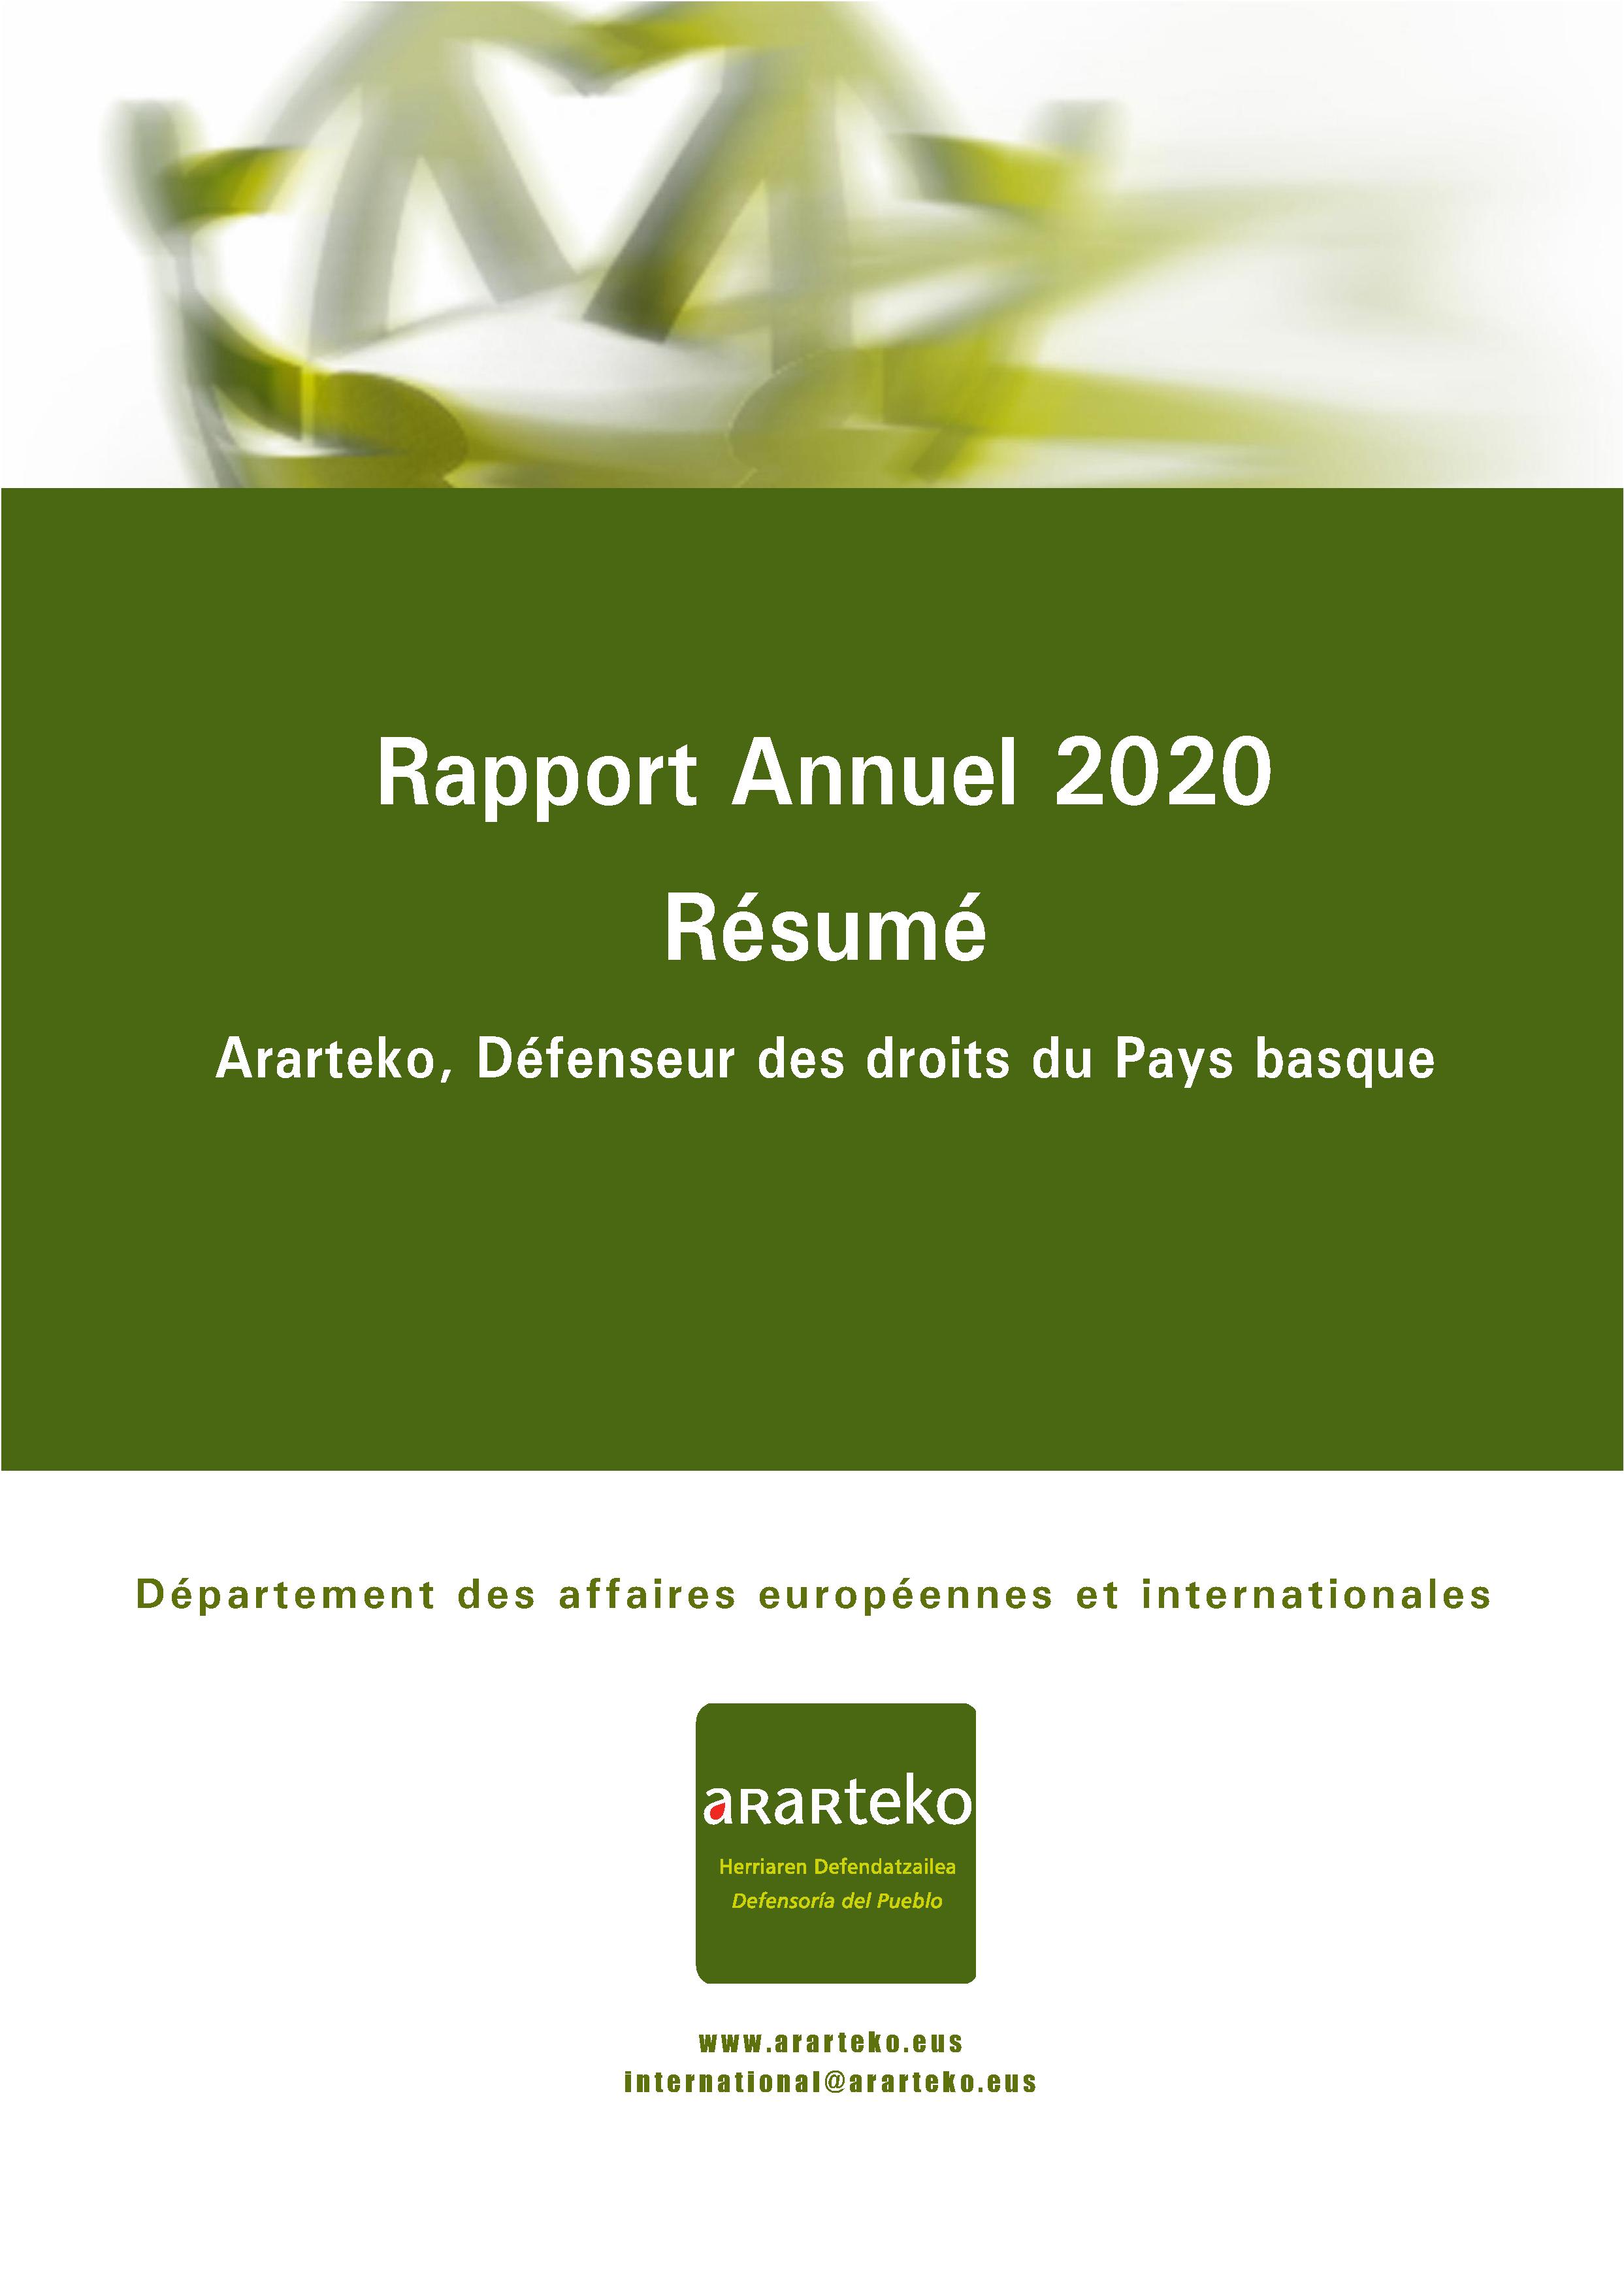 Rapport Annuel 2020: resumé